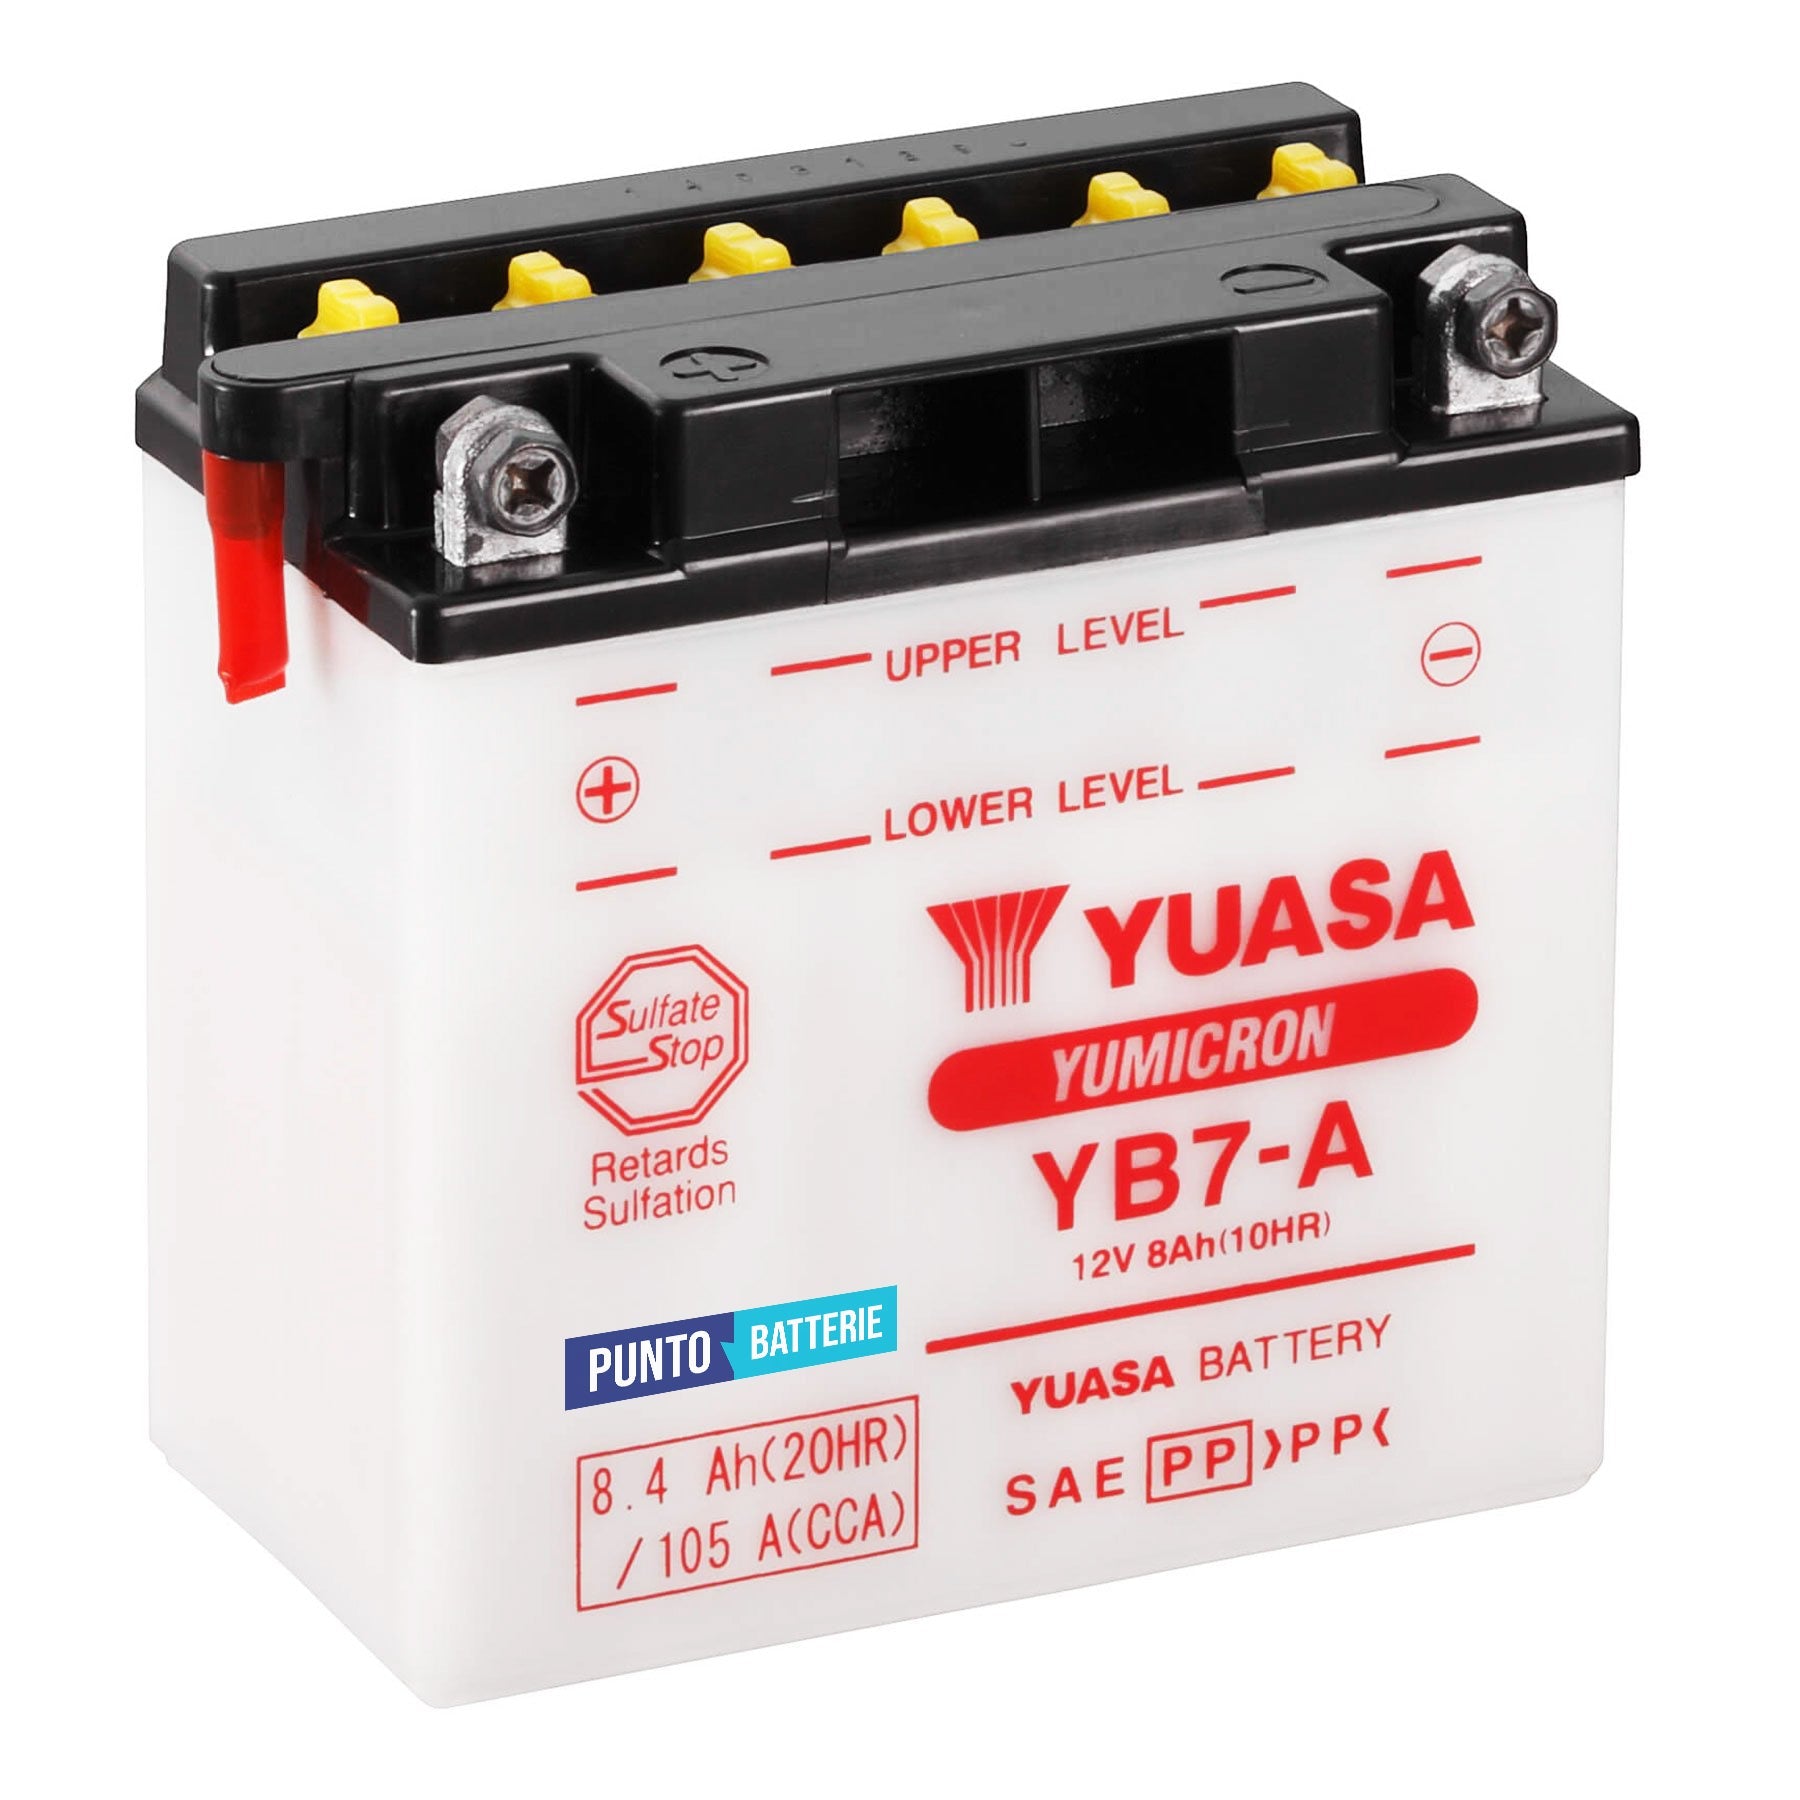 Batteria originale Yuasa YuMicron YB7-A, dimensioni 136 x 75 x 133, polo positivo a sinistra, 12 volt, 8 amperora, 105 ampere. Batteria per moto, scooter e powersport.